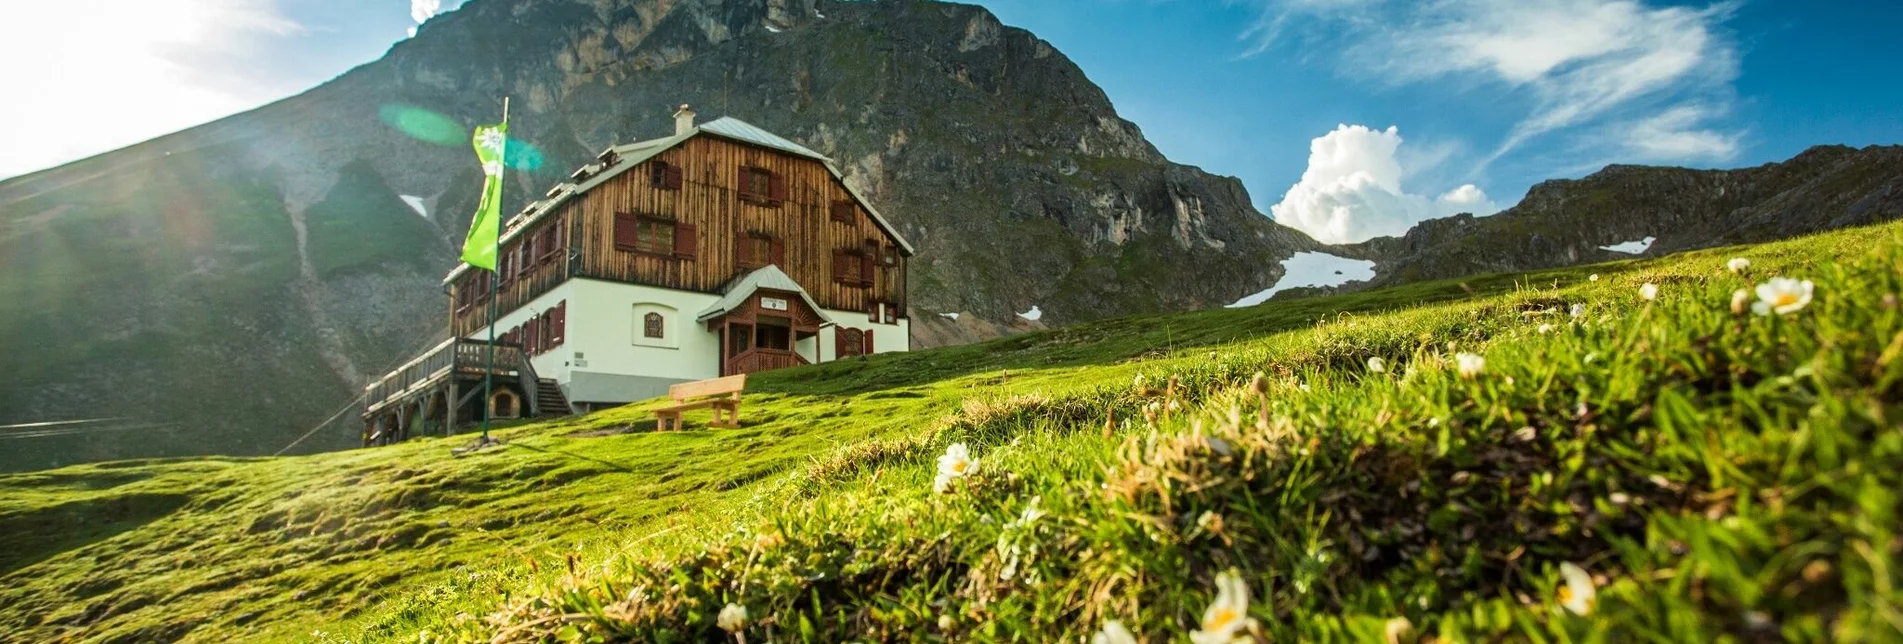 Klettersteig Eselstein Westwand Klettersteig - Touren-Impression #1 | © Alpenverein Austria